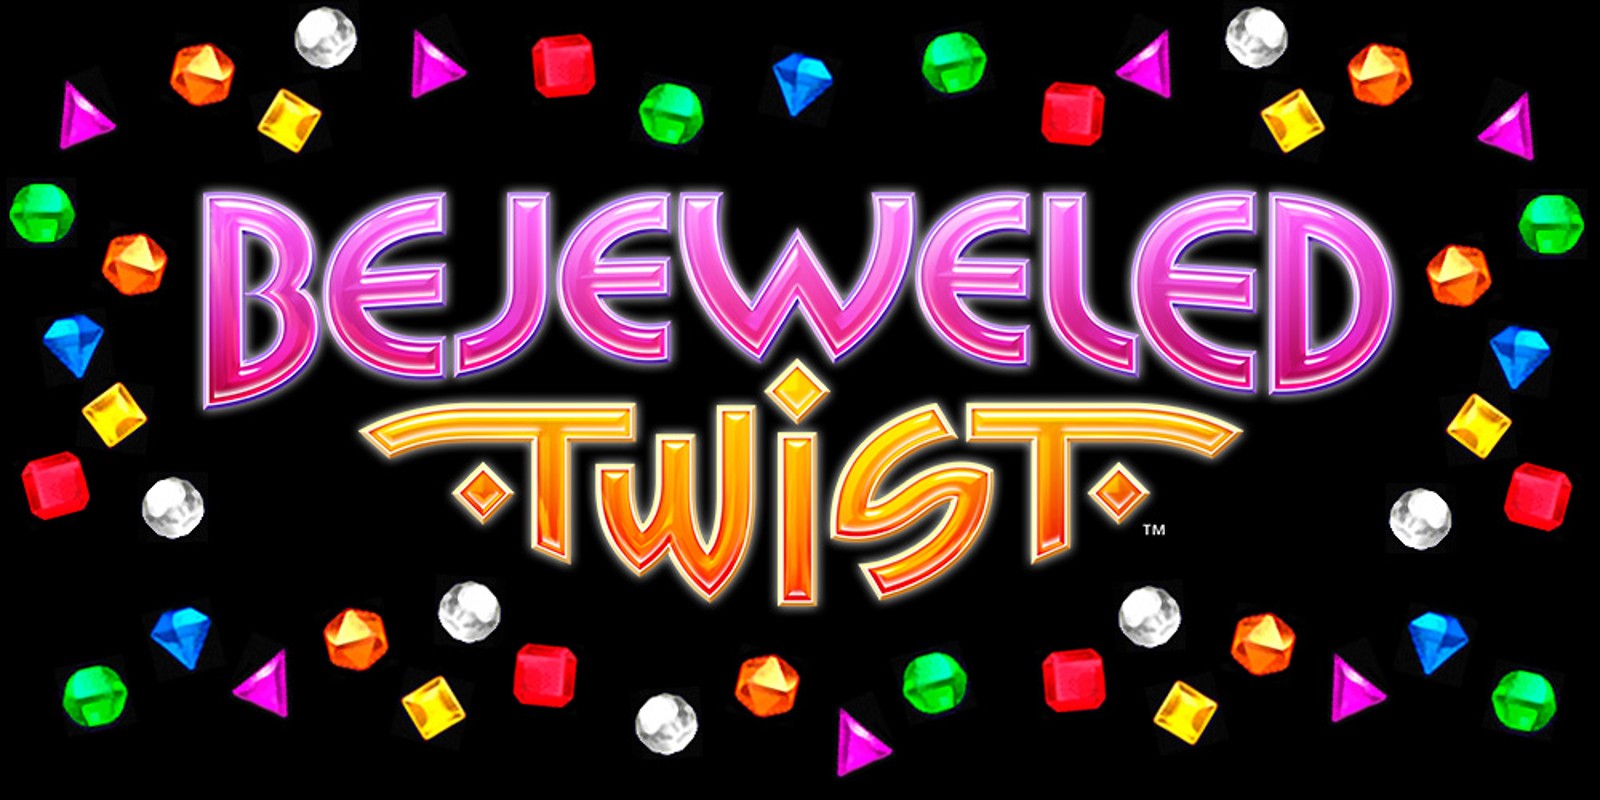 ipod bejeweled twist app